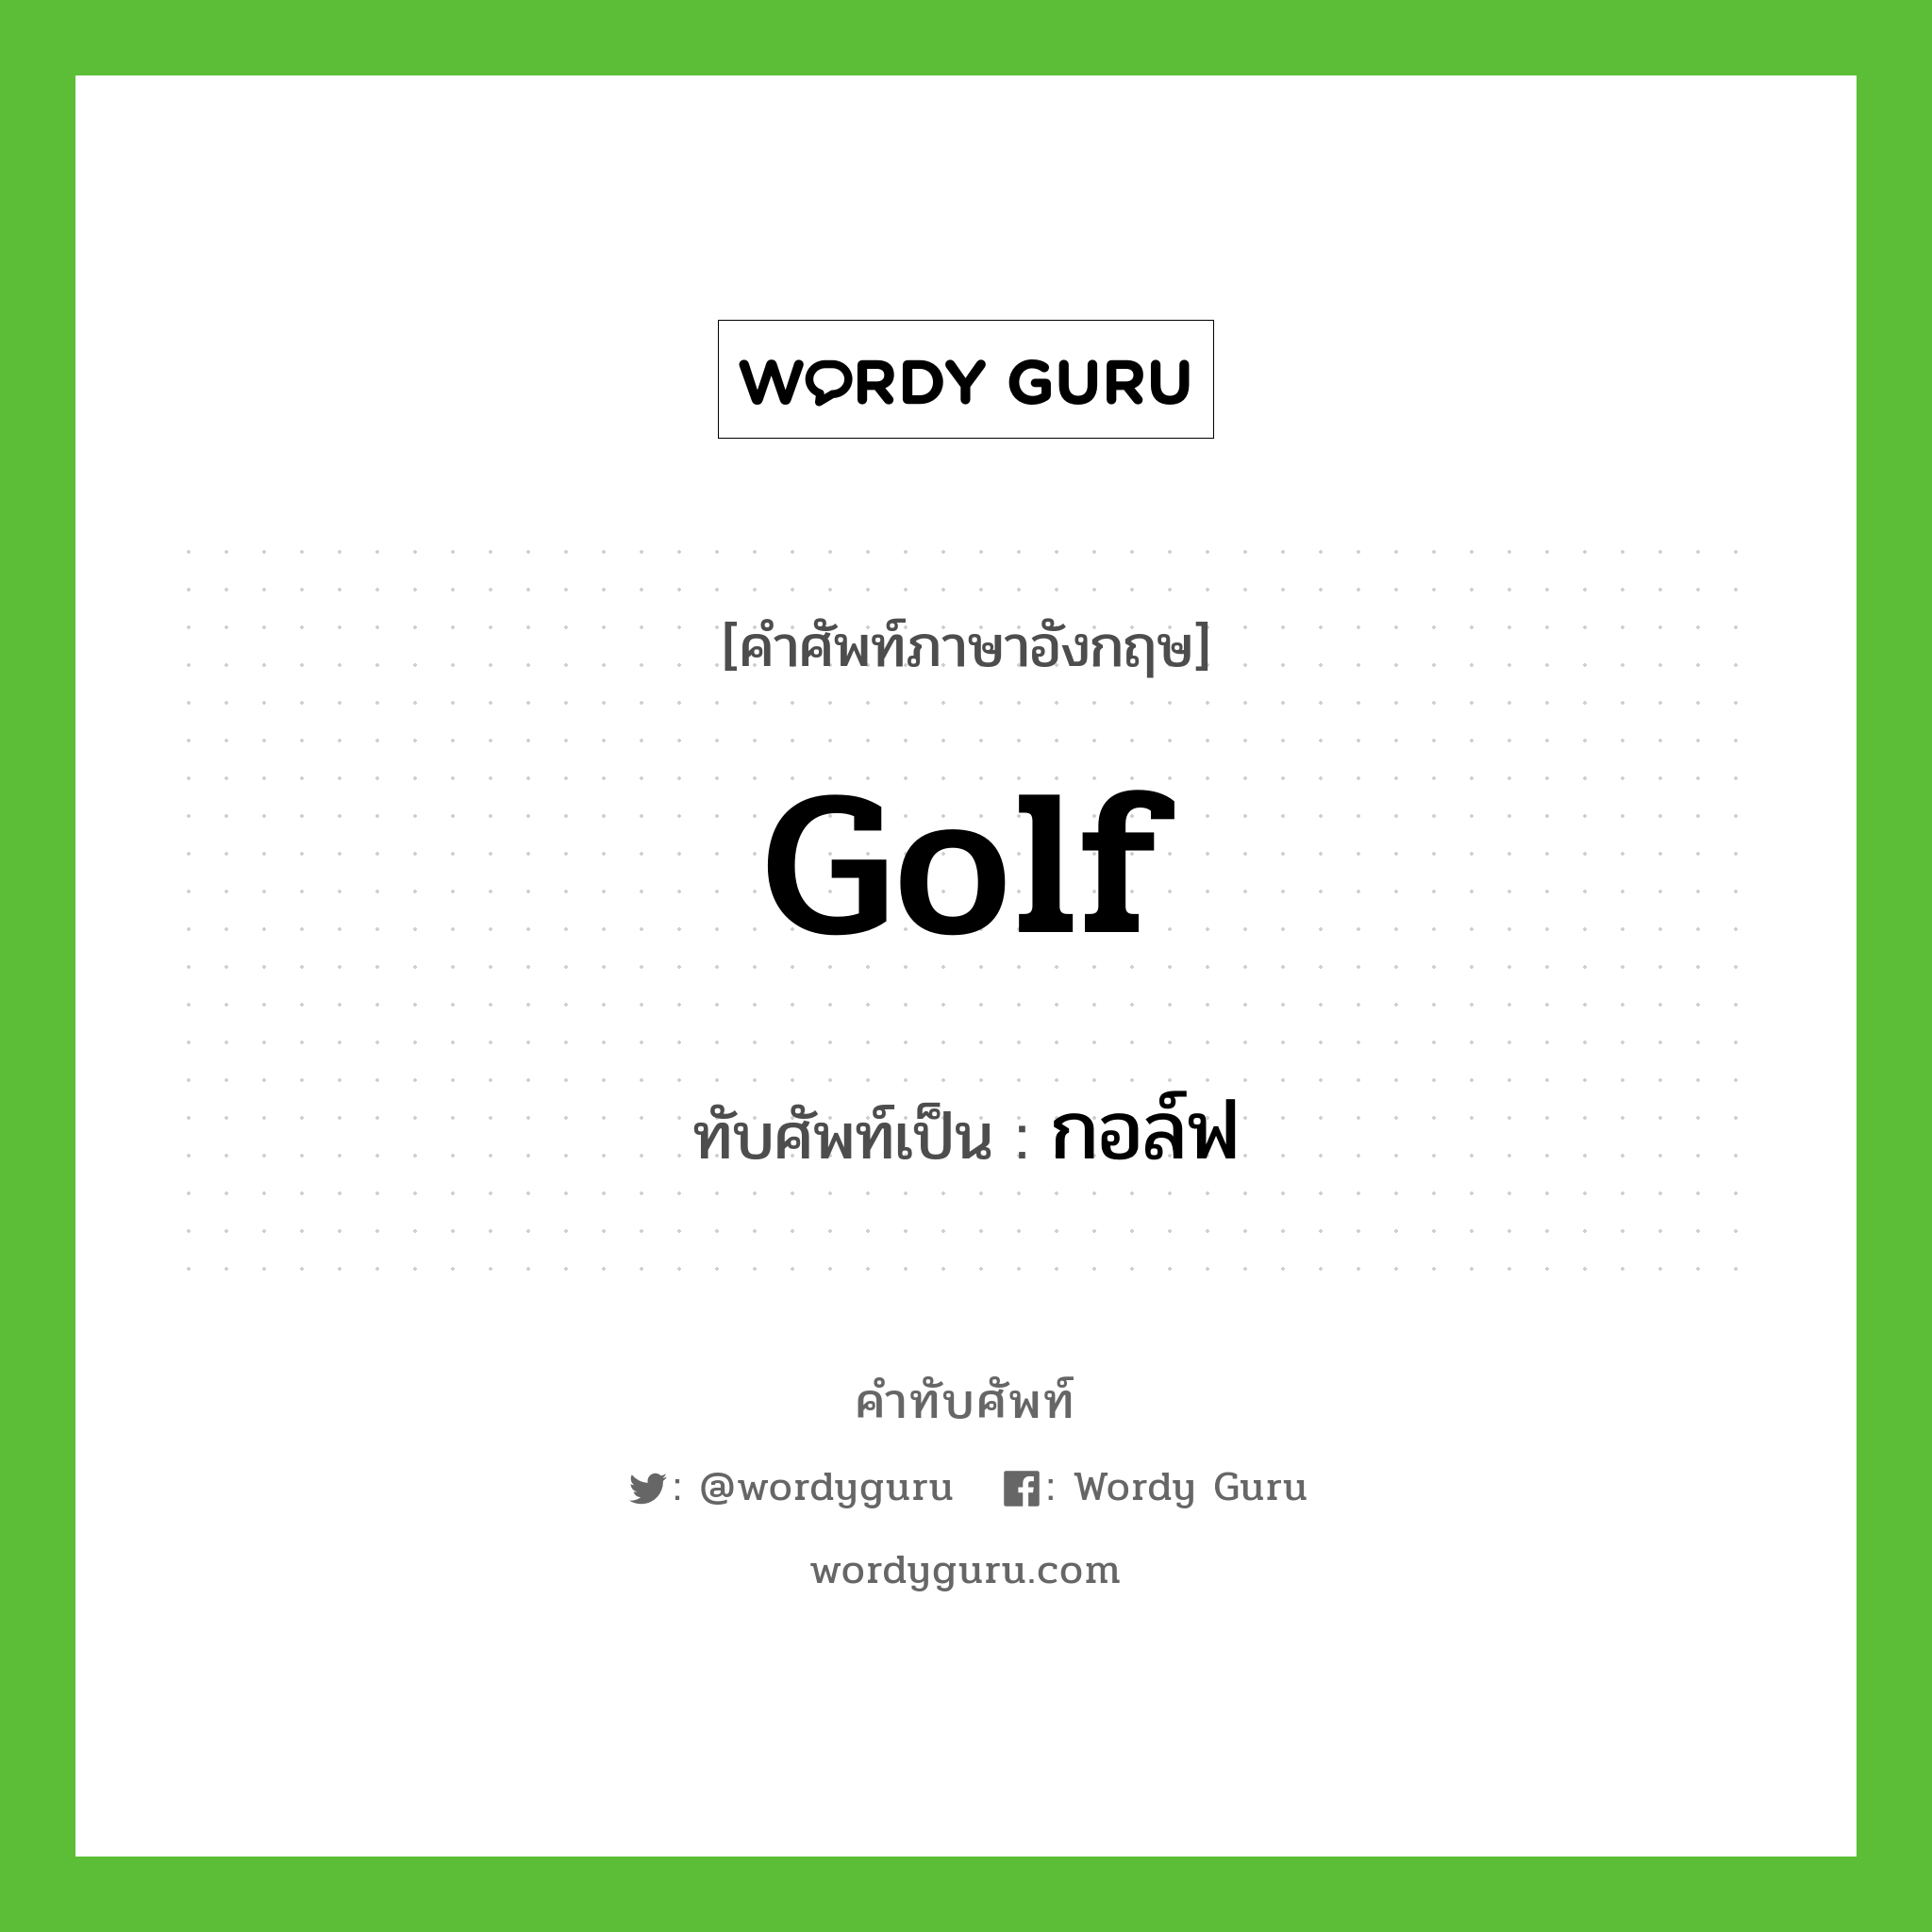 golf เขียนเป็นคำไทยว่าอะไร?, คำศัพท์ภาษาอังกฤษ golf ทับศัพท์เป็น กอล์ฟ